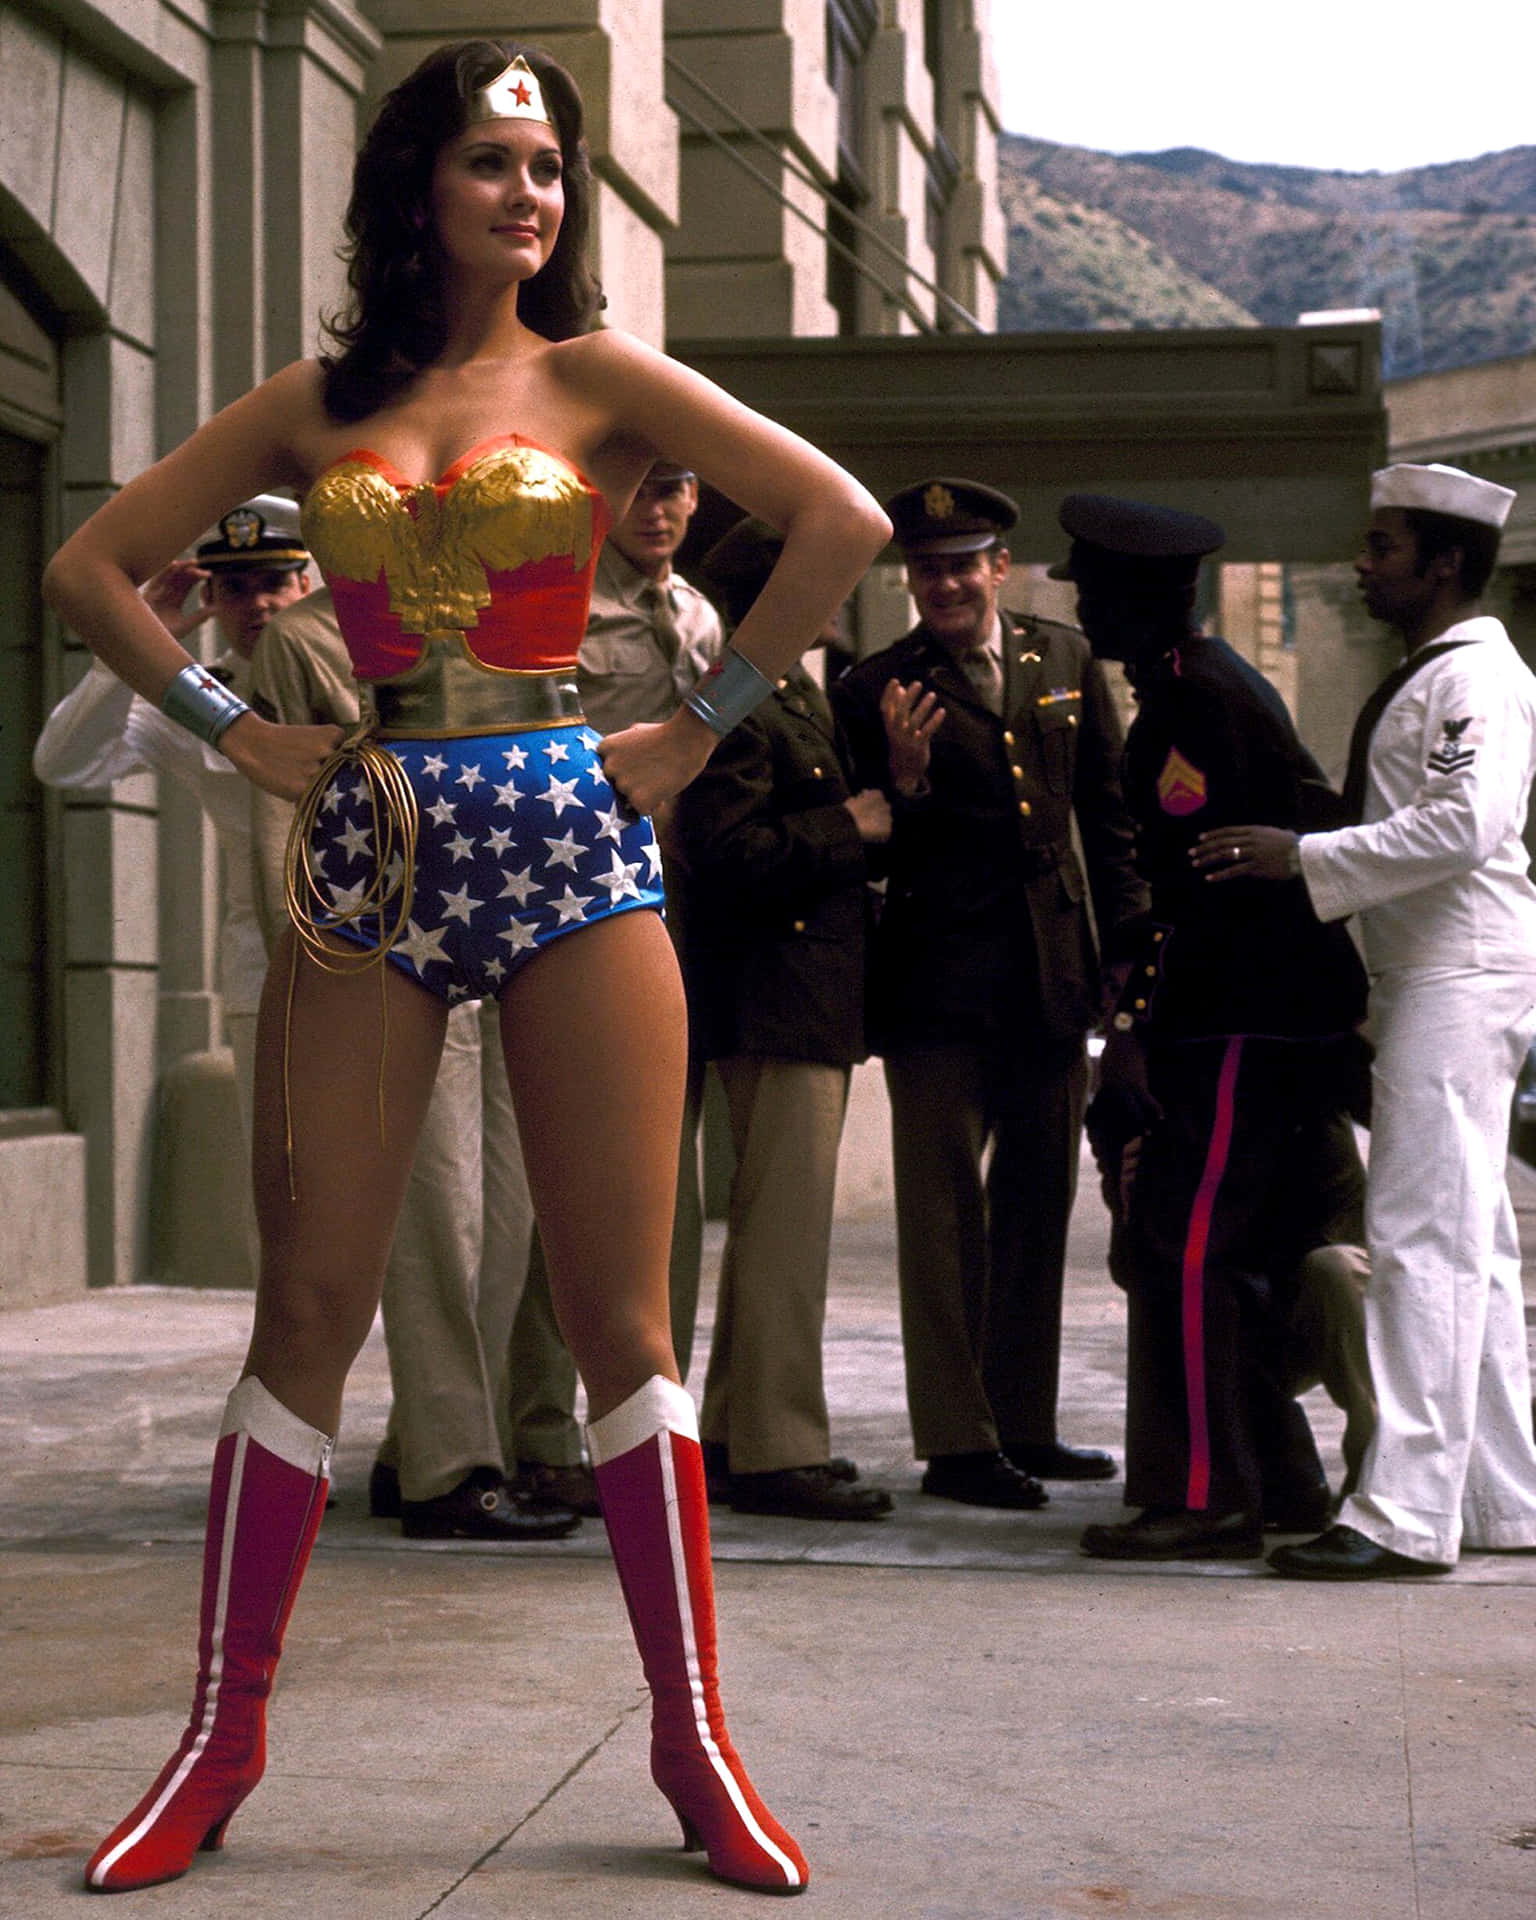 Enkvinna I En Wonder Woman-kostym